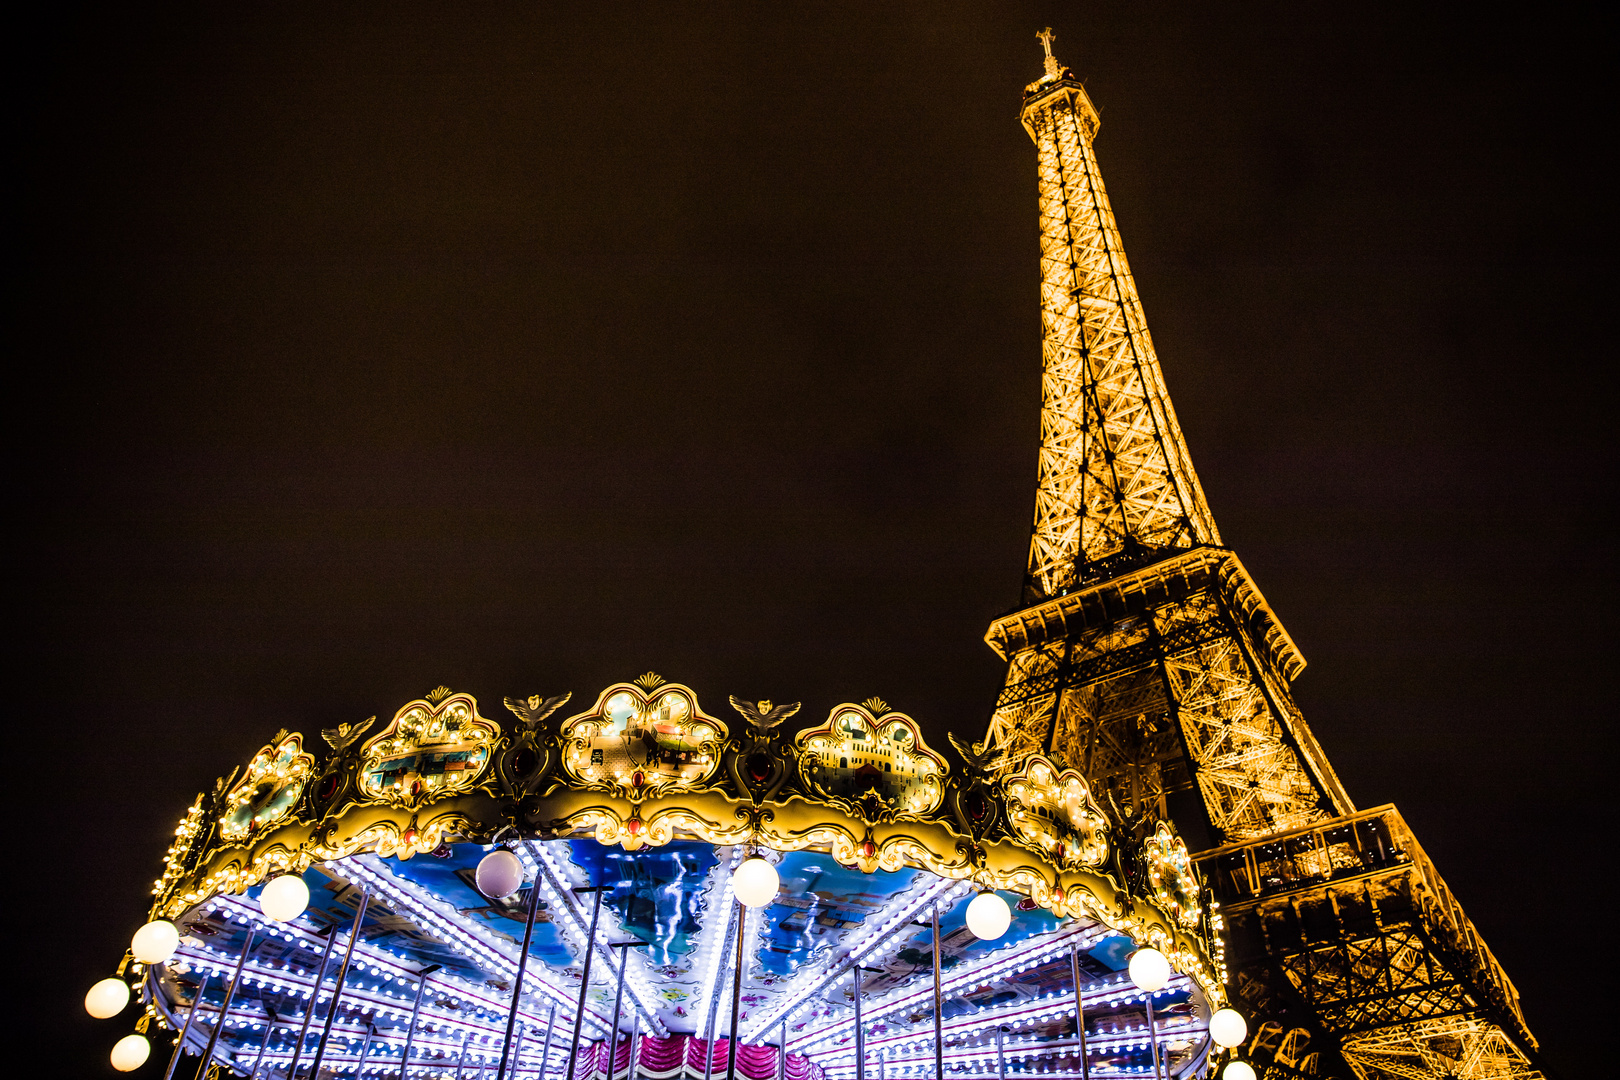 Le carrousel de la Tour Eiffel